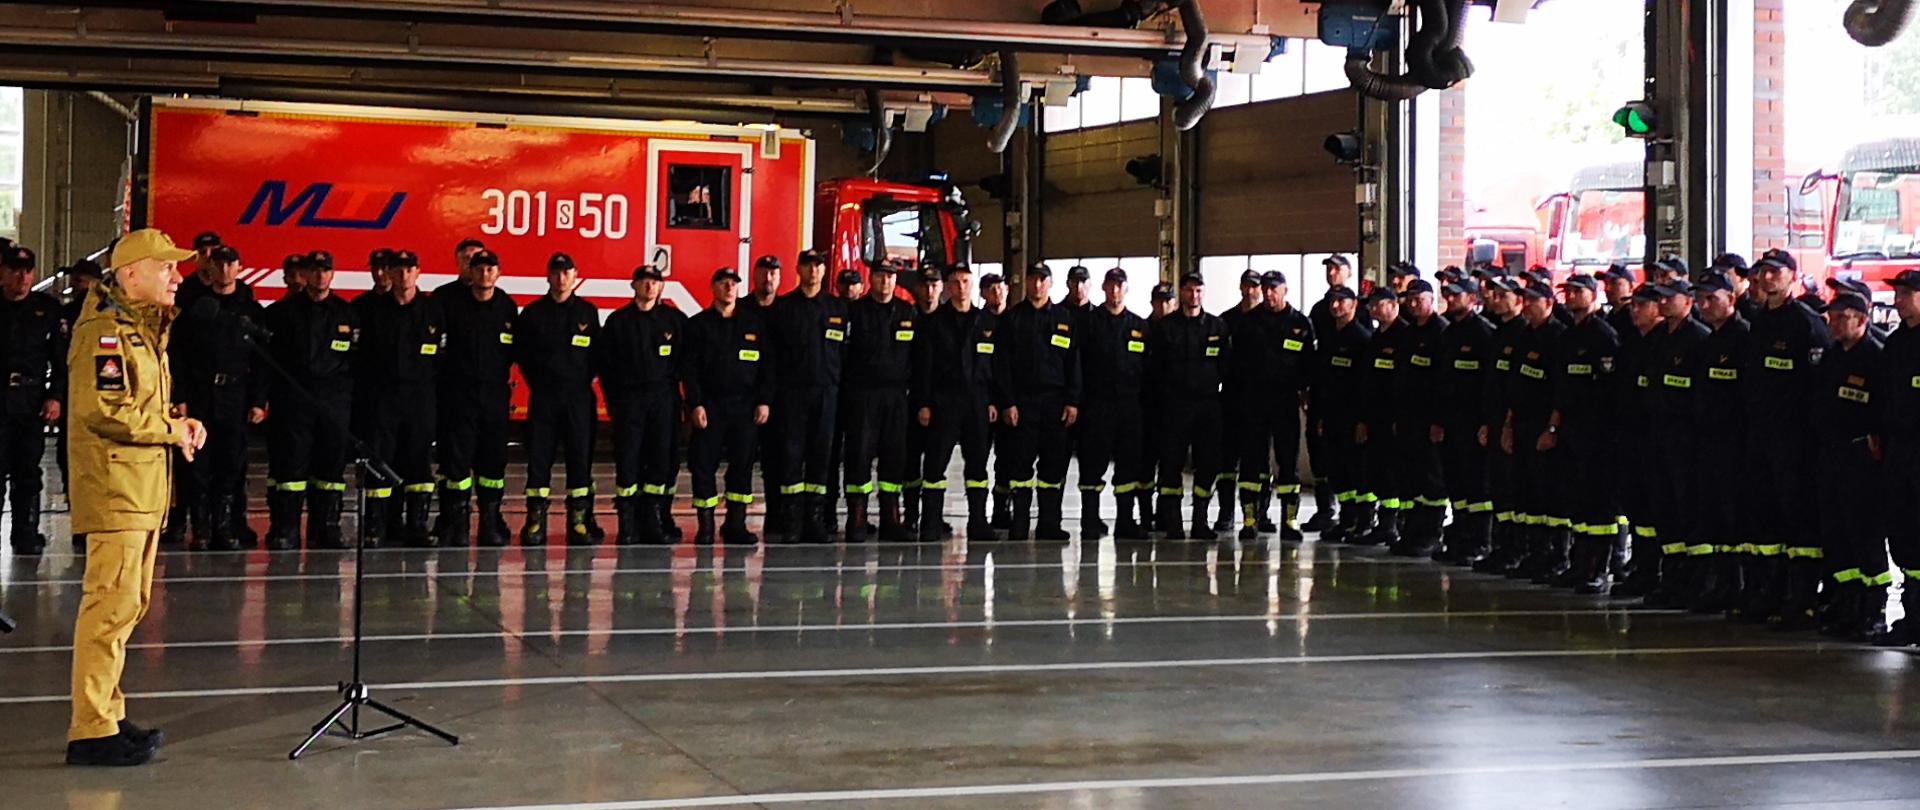 Strażacy z grupy Grecja 2021, po prawej na pierwszym planie Komendant Główny PSP nadbryg. Andrzej Bartkowiak 